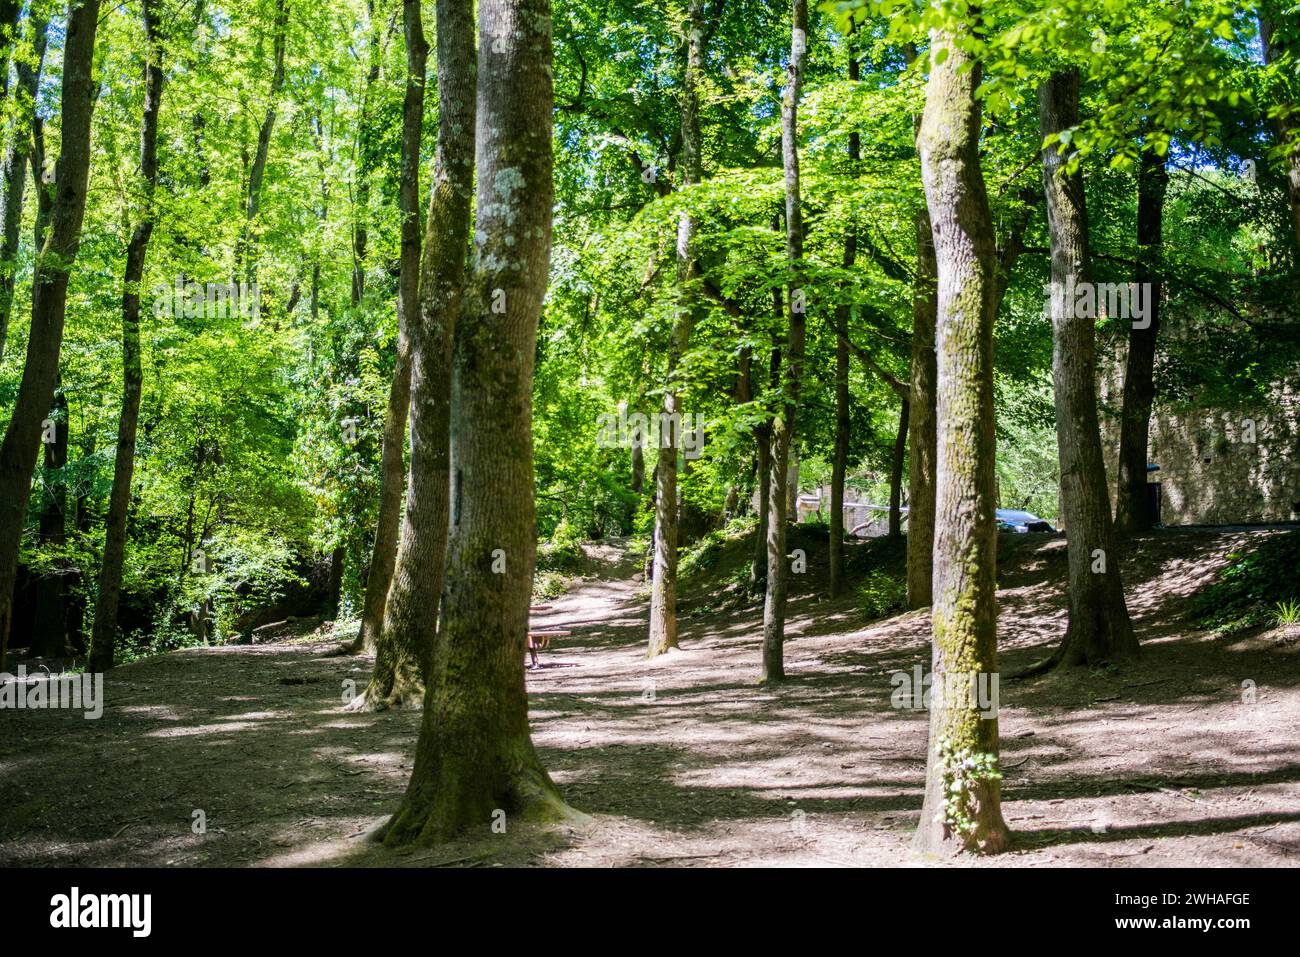 Una foresta tranquilla e verde, un paradiso di tranquillità, che mette in mostra la bellezza della natura e l'armonia pacifica di un fiorente bosco. Foto Stock